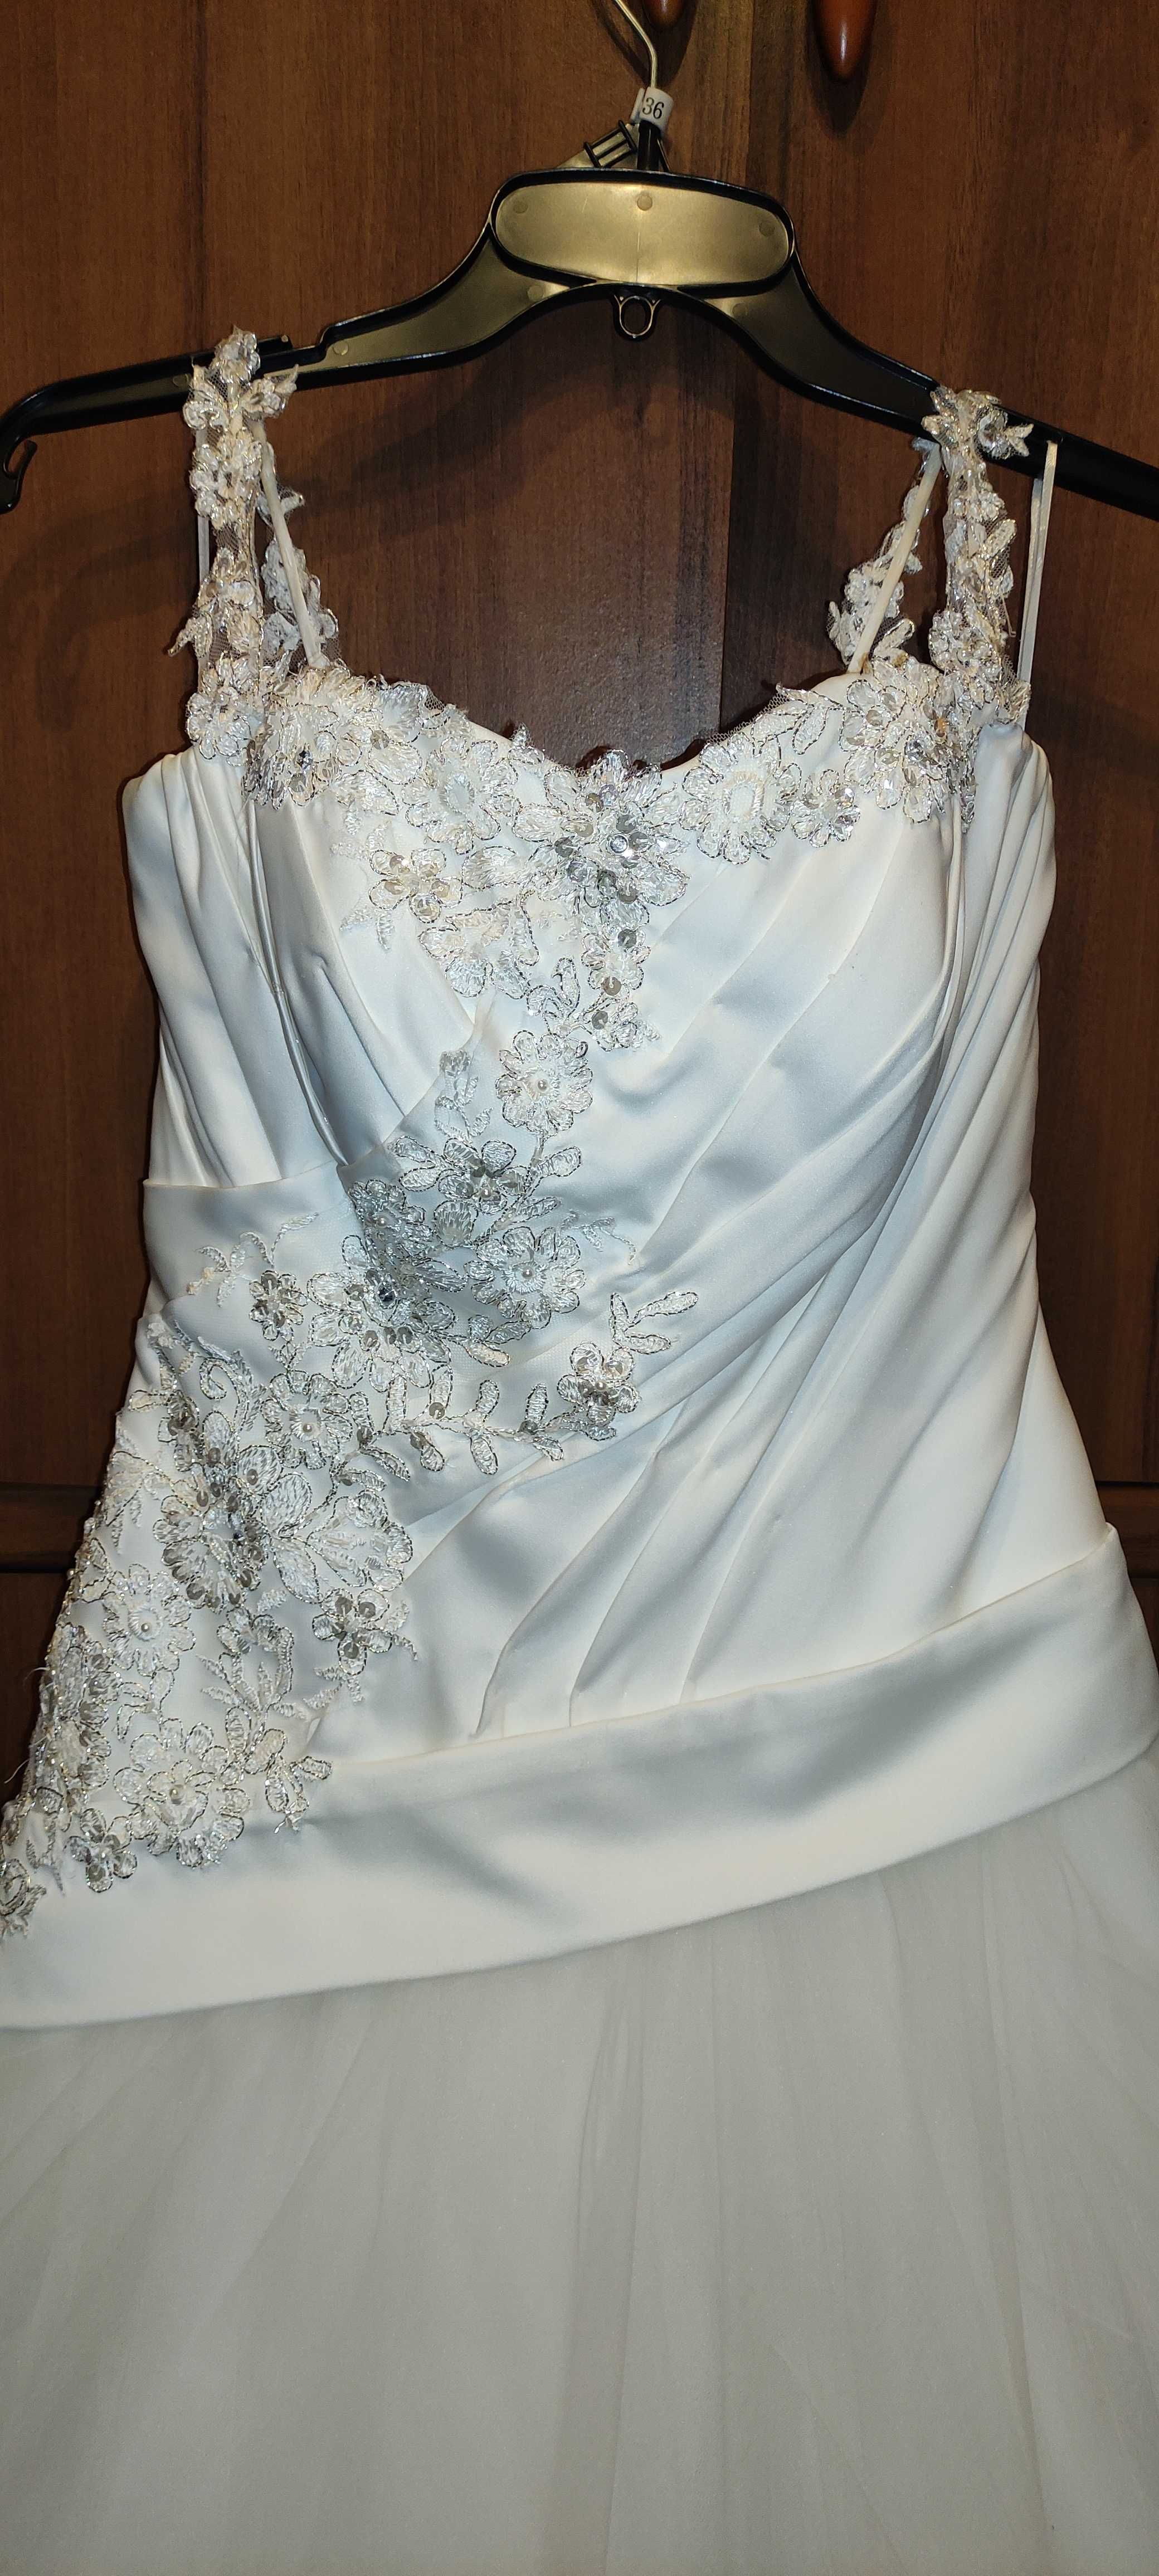 Używana suknia ślubna w kolorze ecru